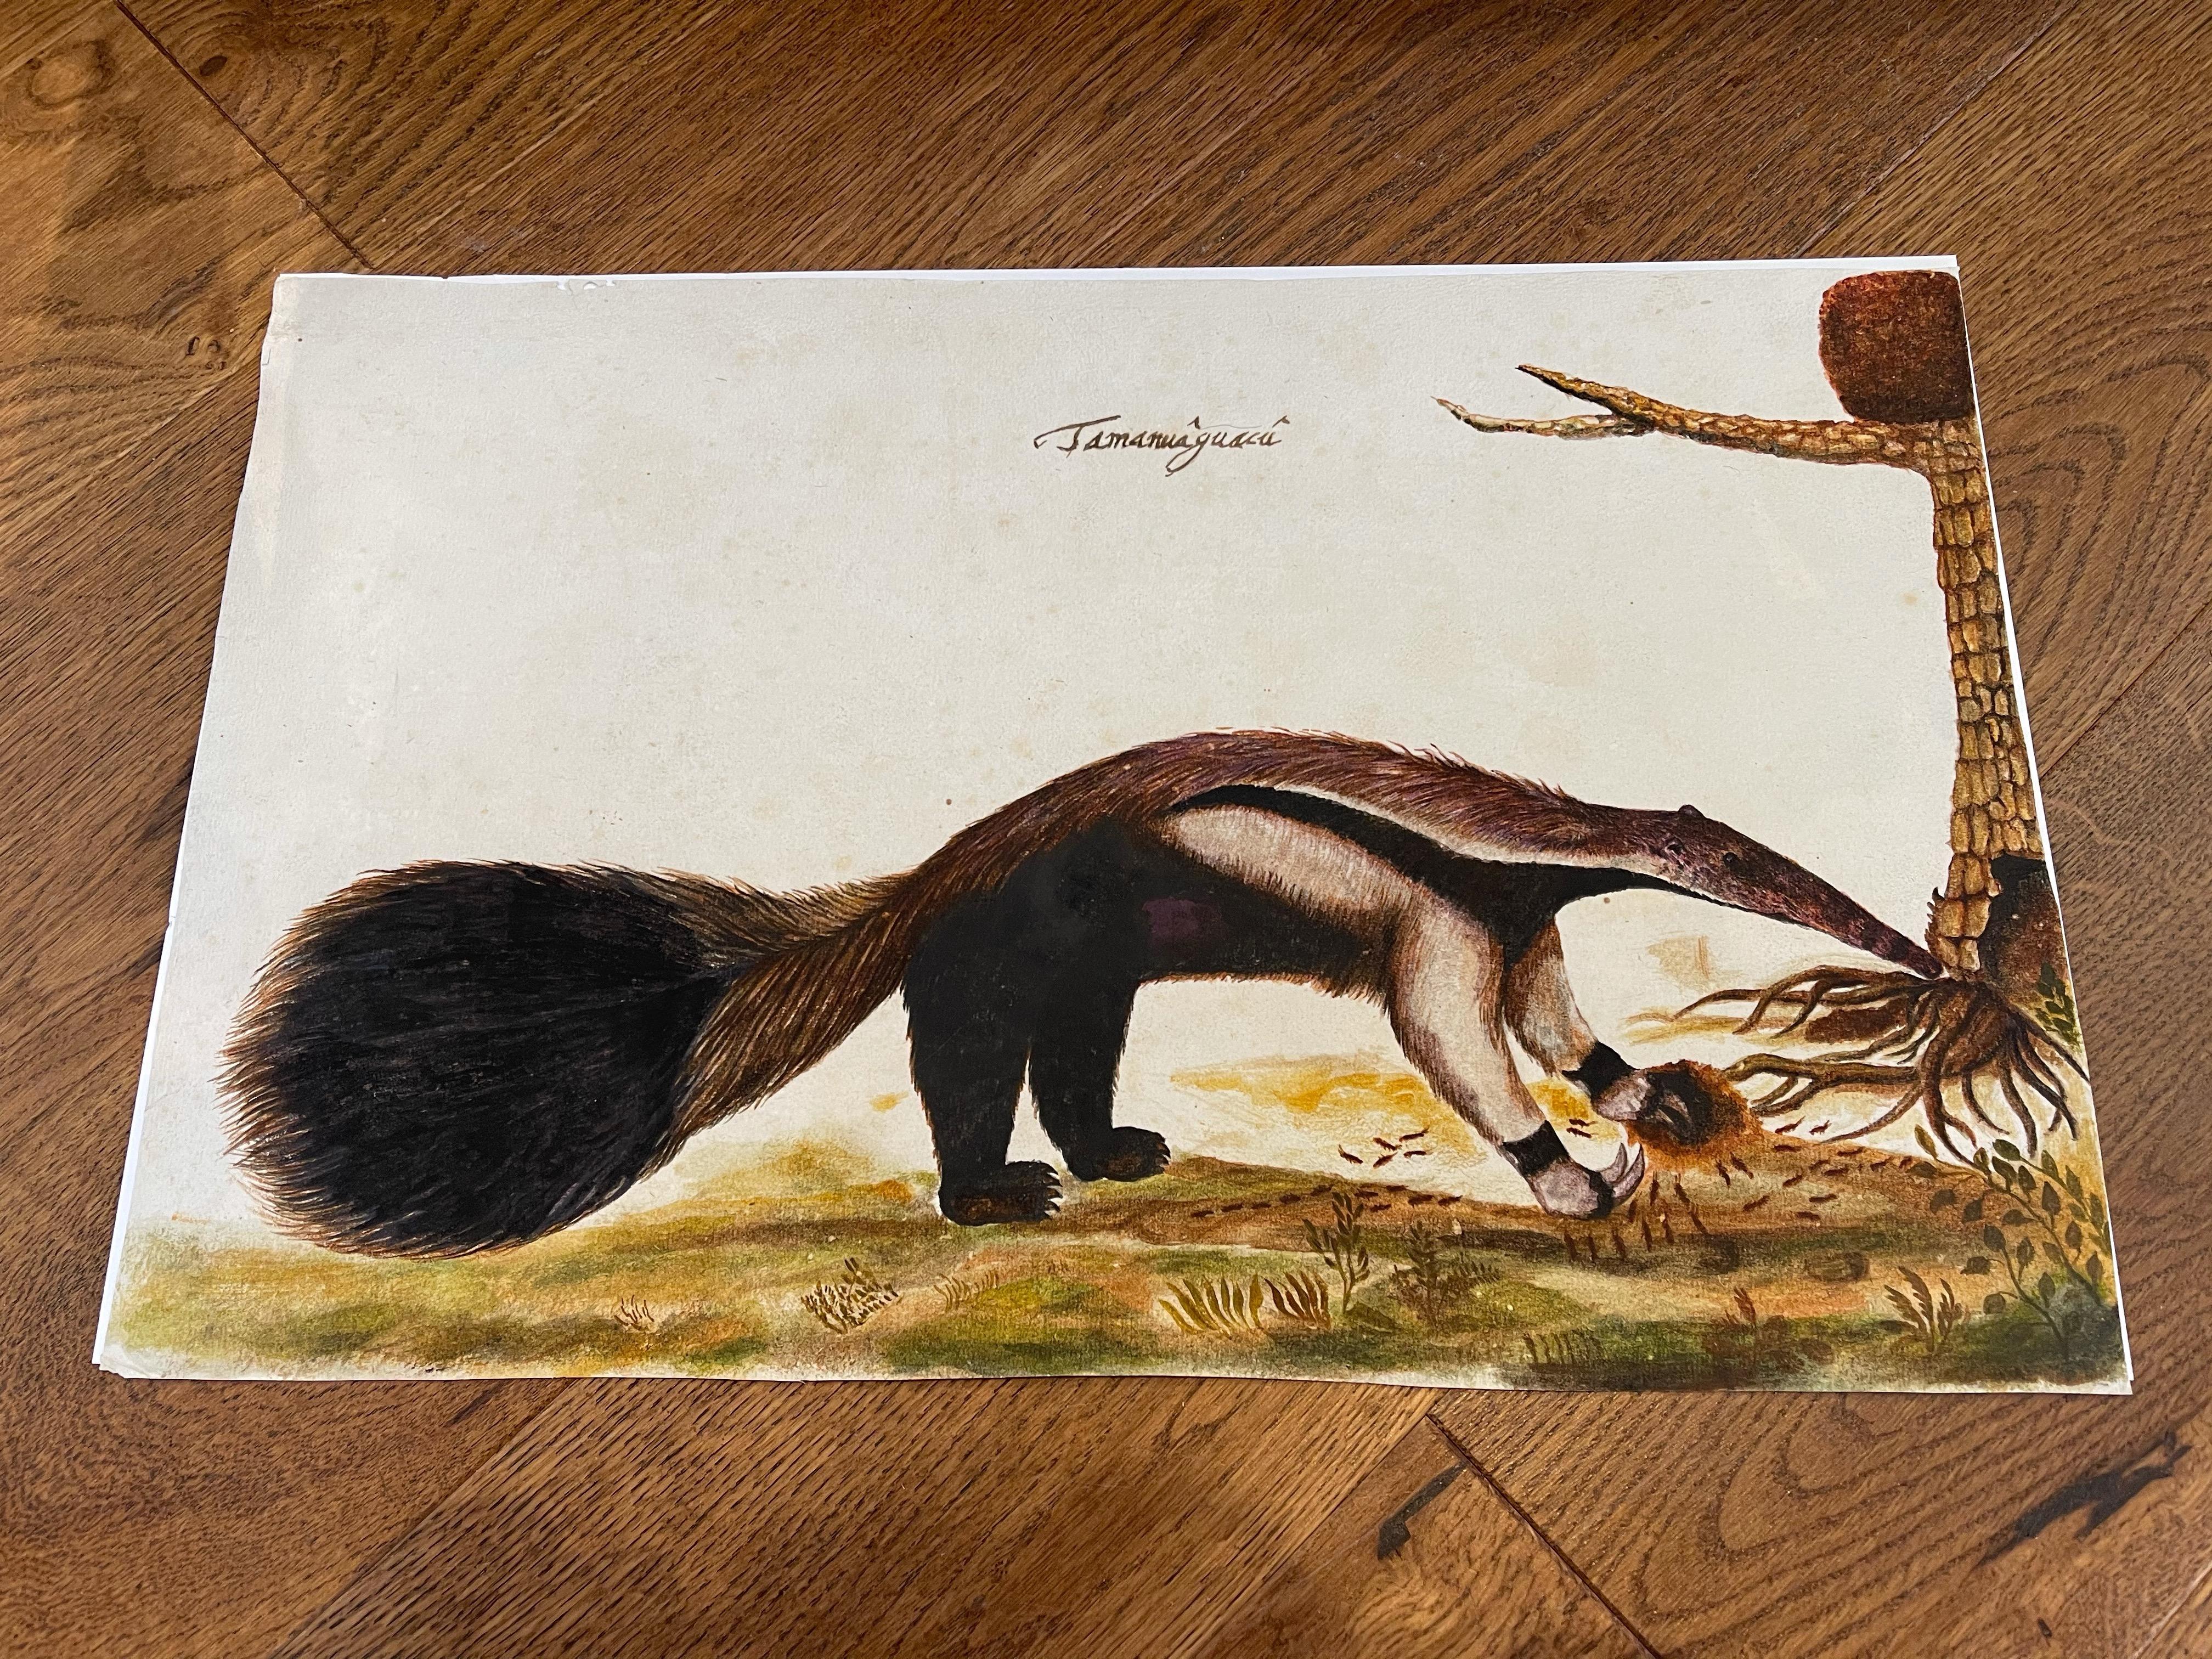 Tiergemälde eines „Tamanuguac (Affeneater)“ aus dem späten 17. und 18. Jahrhundert, Brasilien – Art von Zacharias Wagener